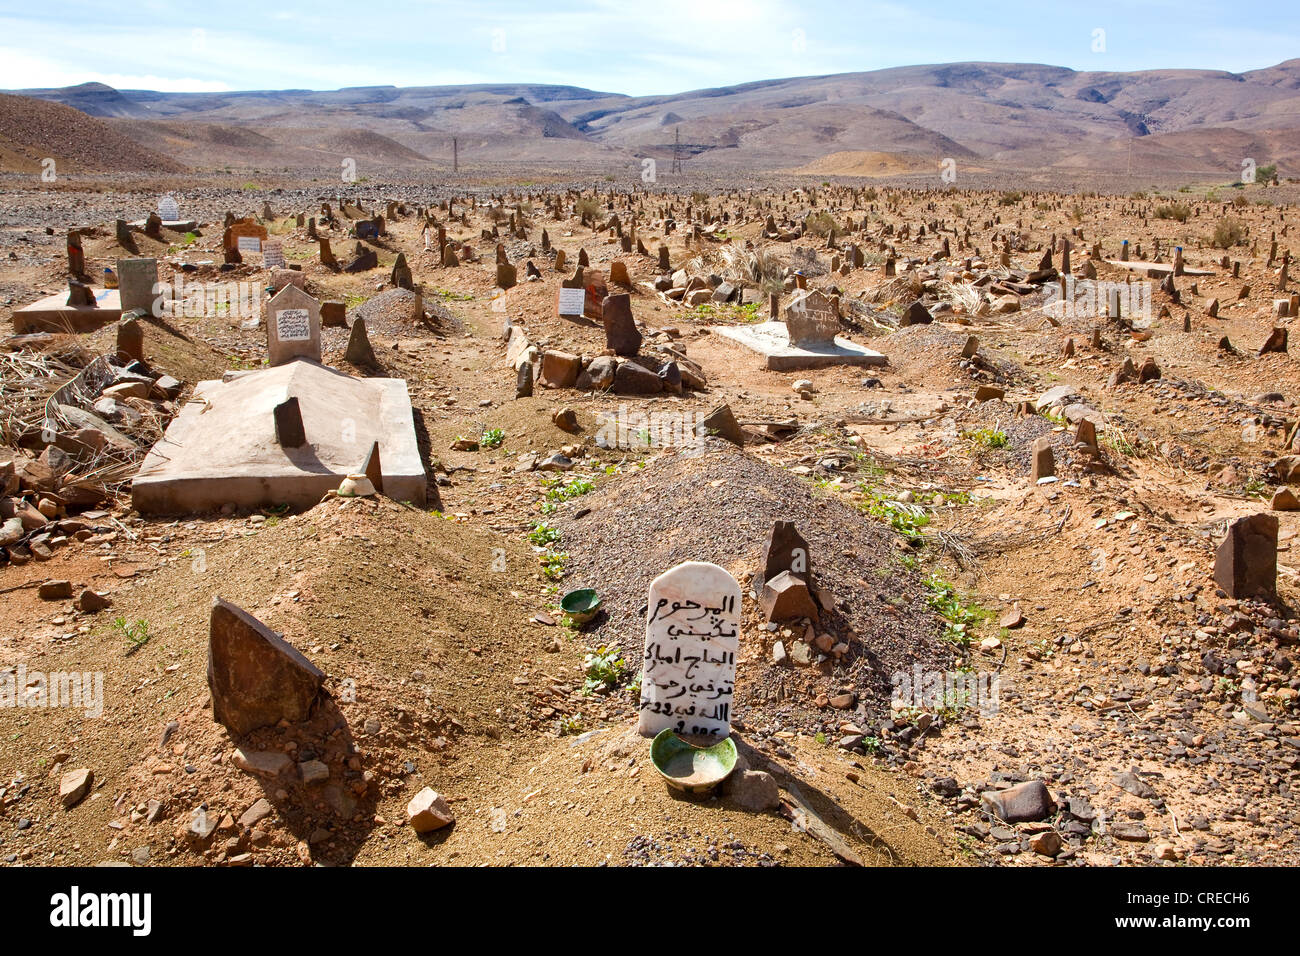 Friedhof in einem Feld, Draa-Tal in der Nähe von Zagora, Marokko, Afrika Stockfoto